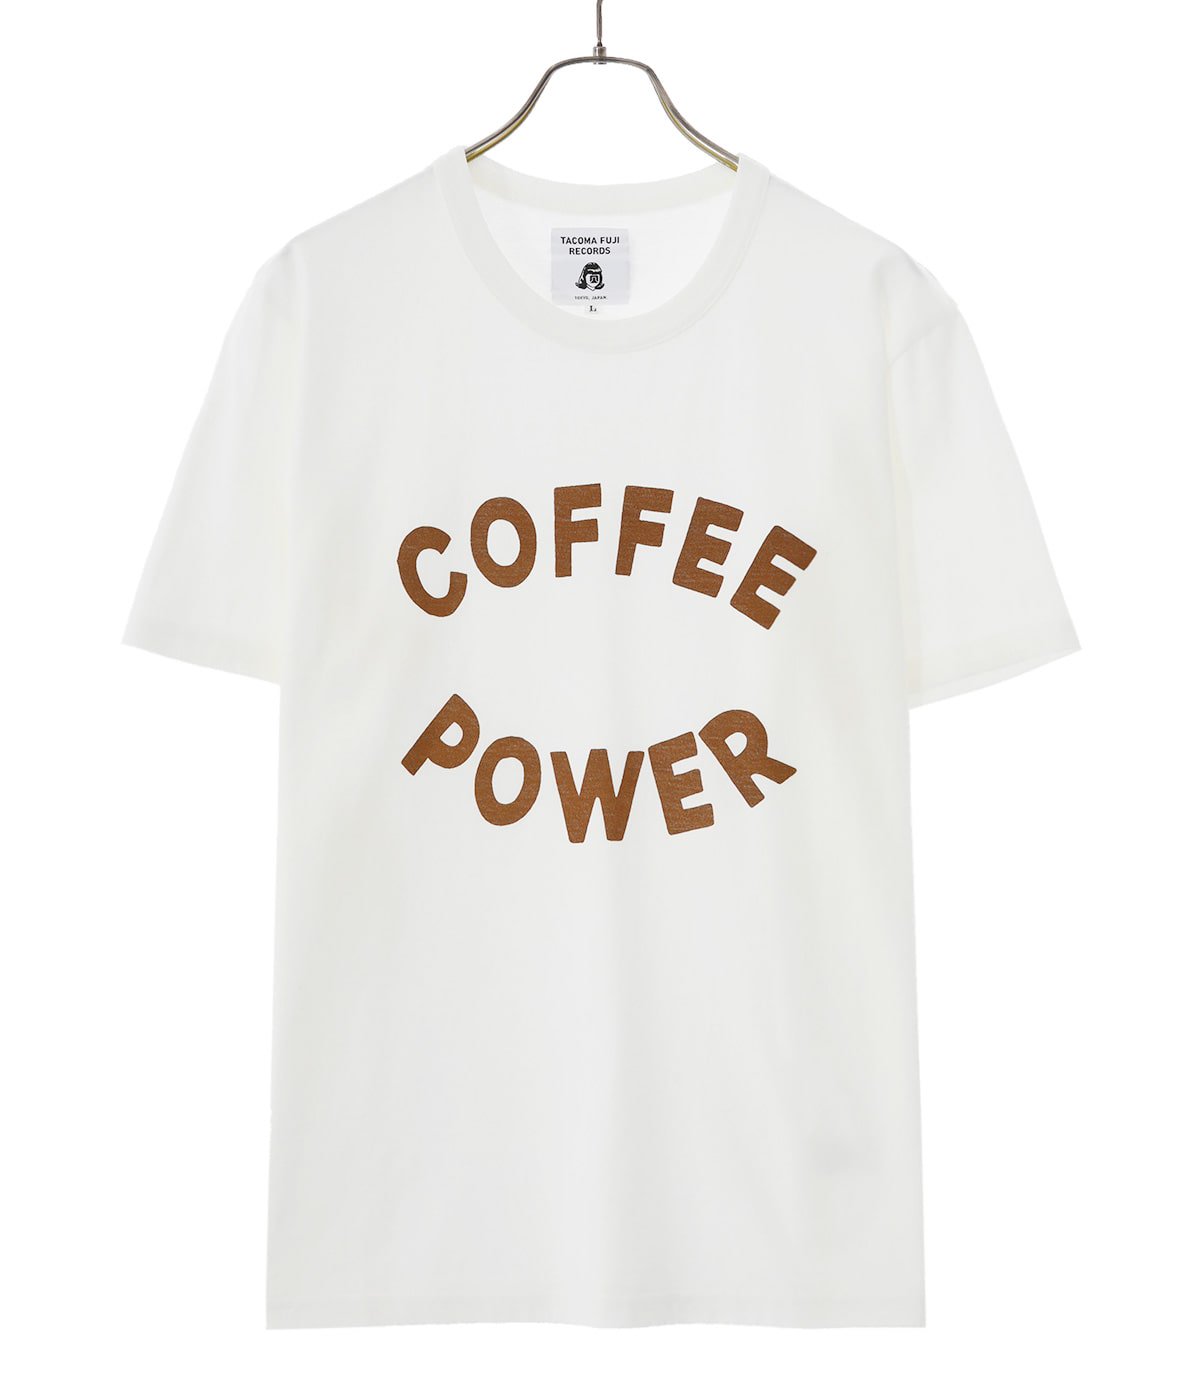 COFFEE POWER